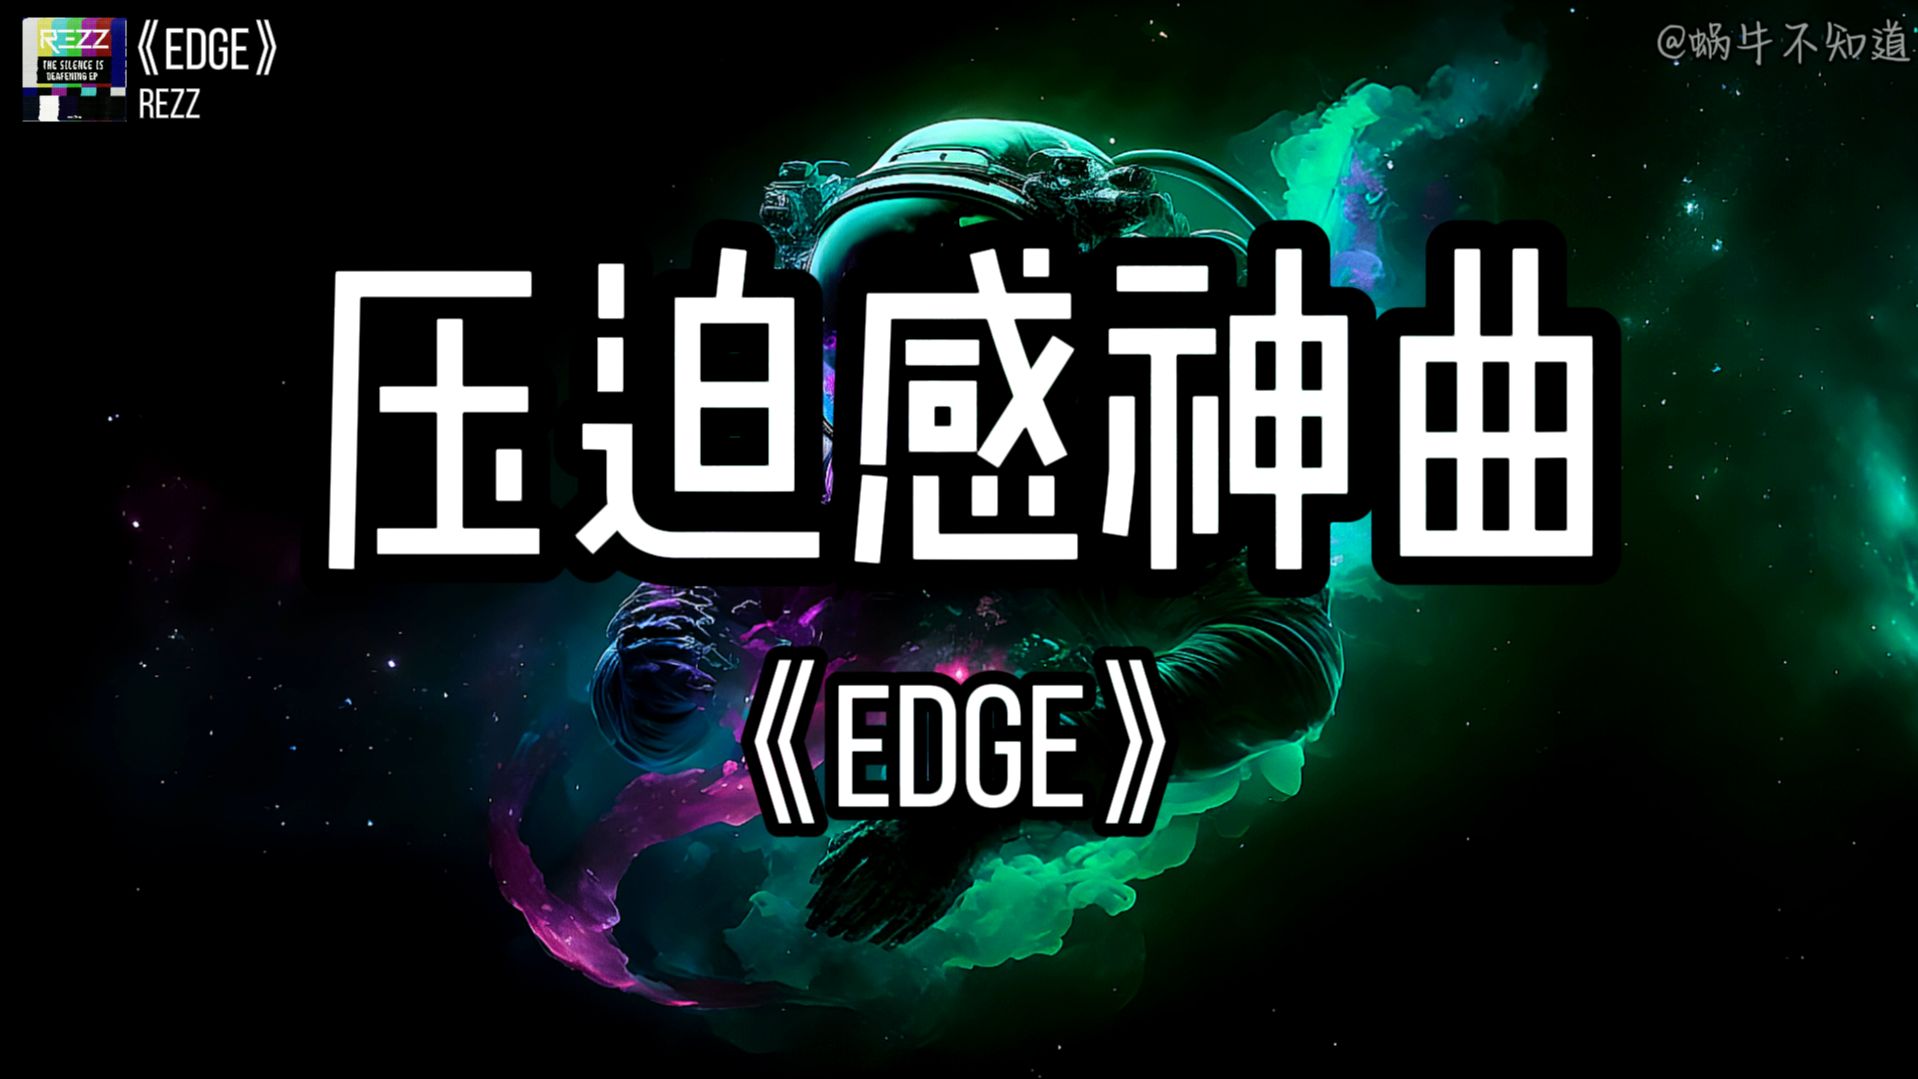 【循环歌曲】《Edge》“全网超火压迫感神曲”（无损音质）